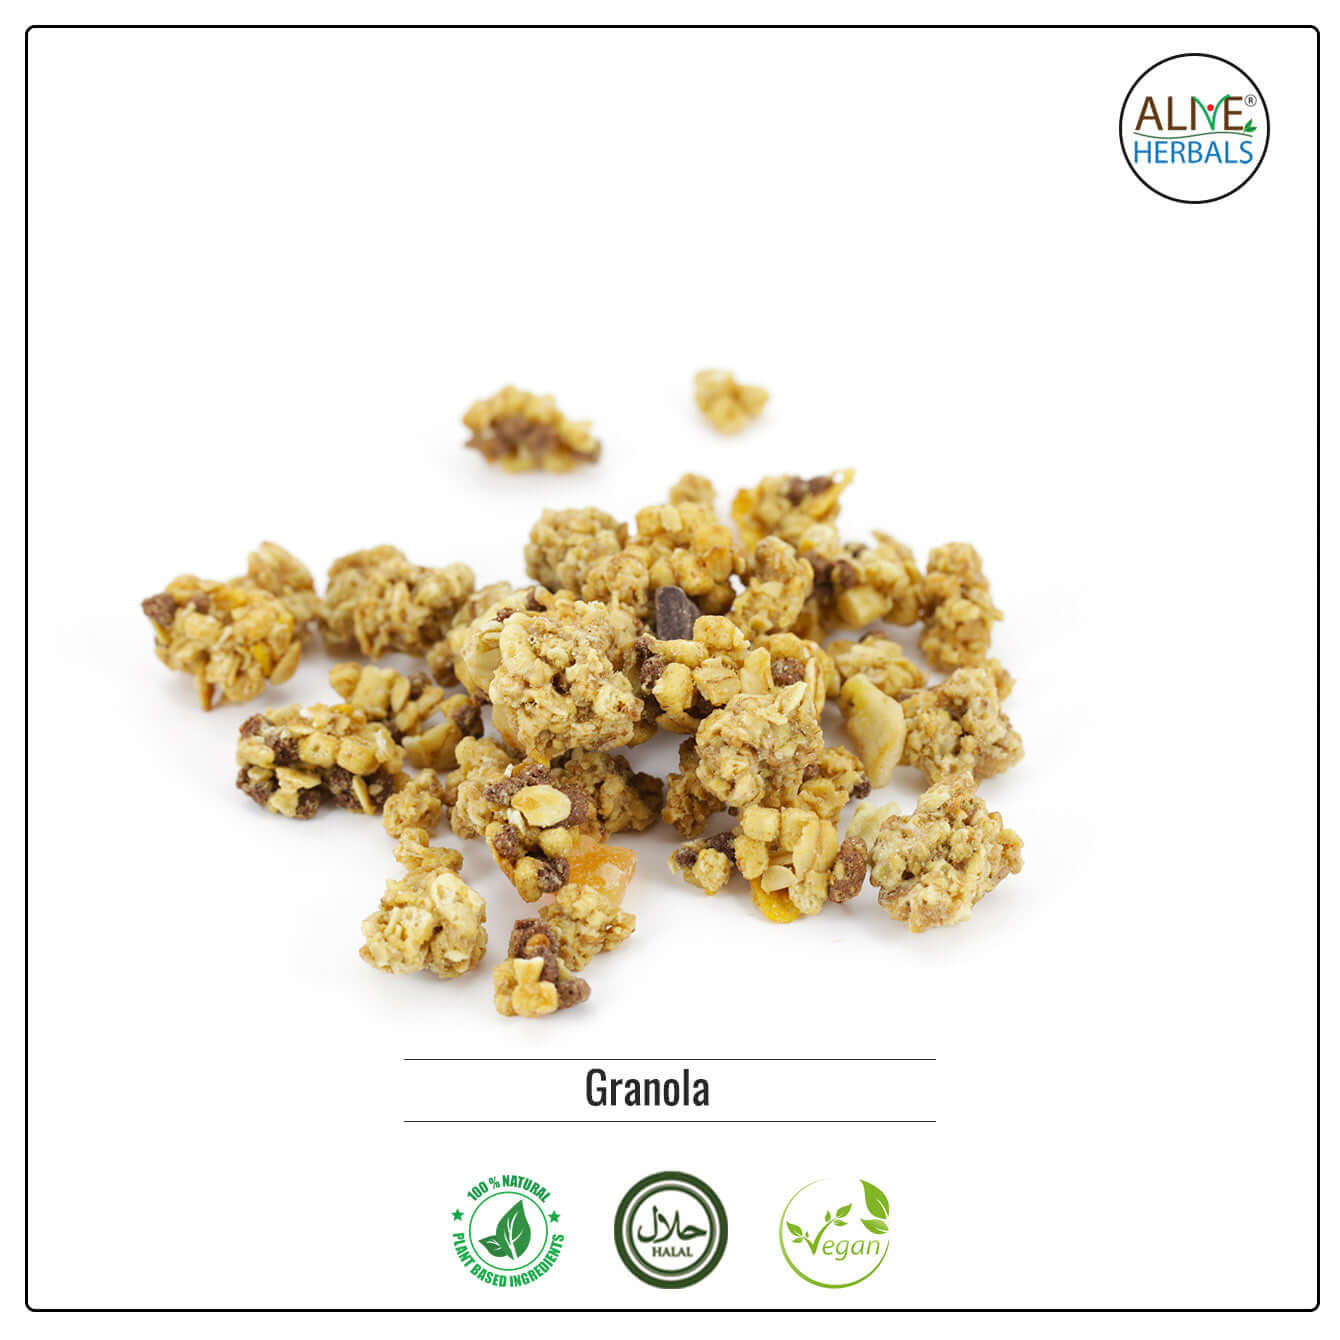 Granola - Buy at Natural Food Store | Alive Herbals.